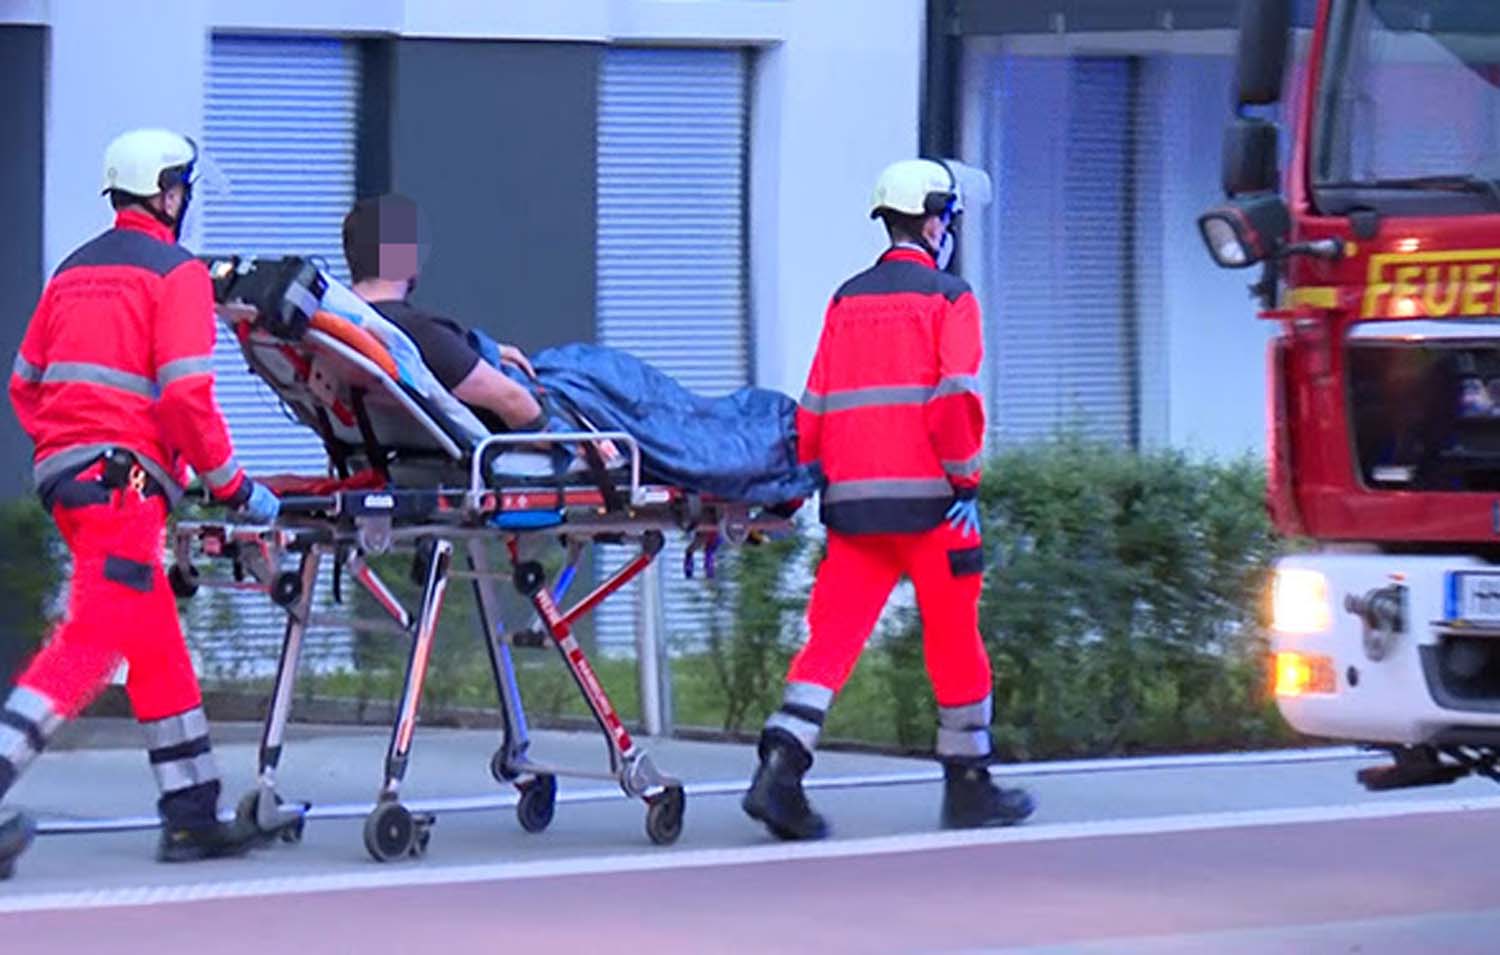 Sisha-Pfeiffe durch ausströmendes Gas in Hamburg explosiert – drei Verletzte in Klinik